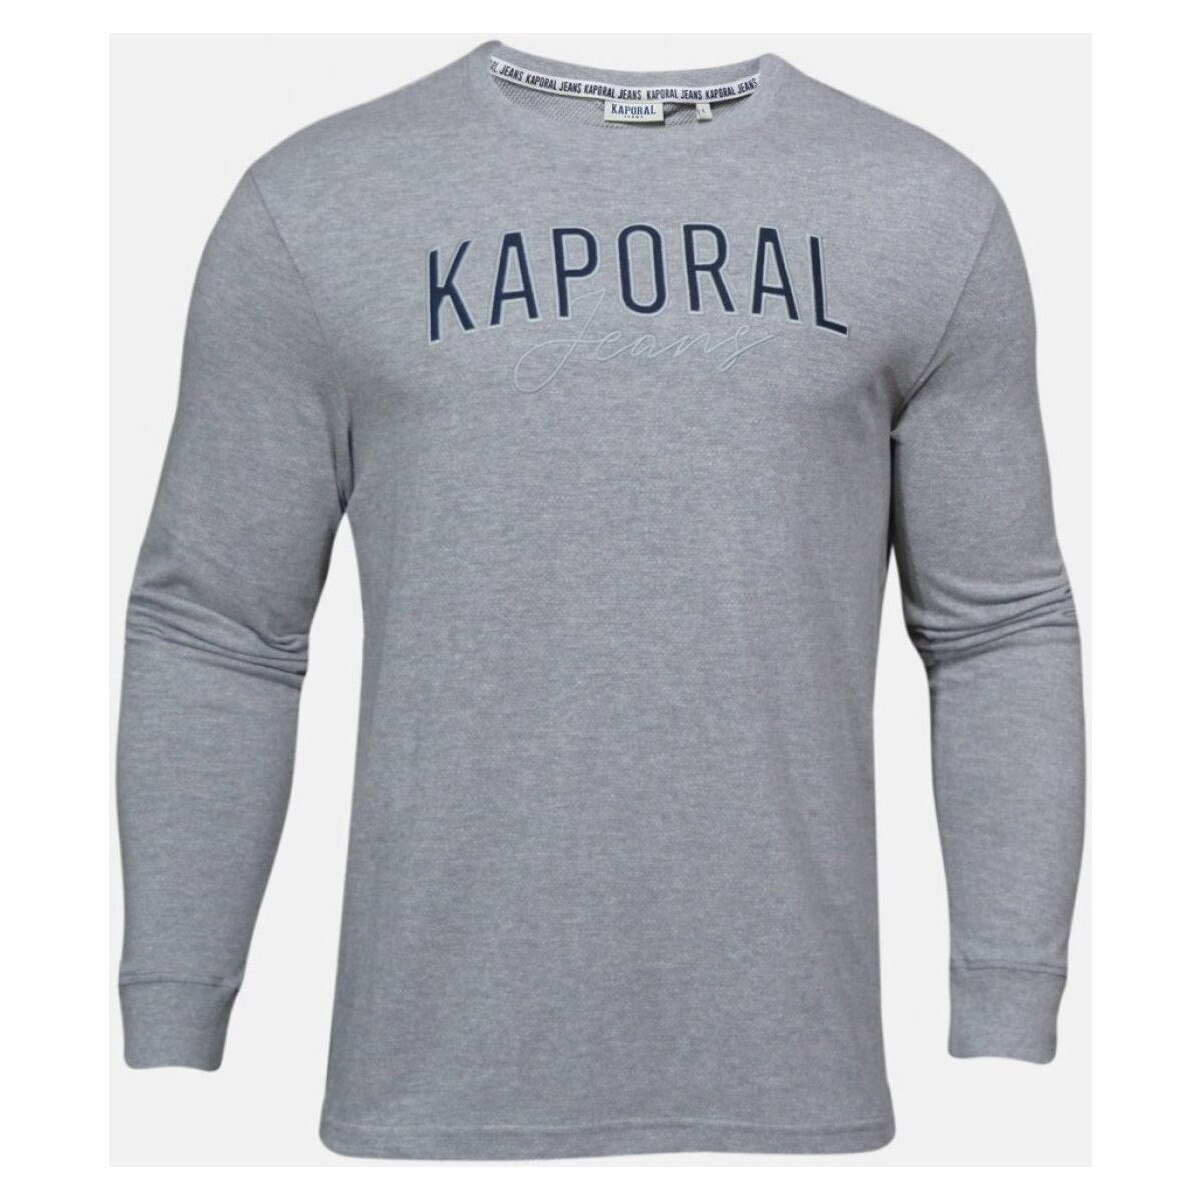 Υφασμάτινα Άνδρας Μπλουζάκια με μακριά μανίκια Kaporal RENZO Grey